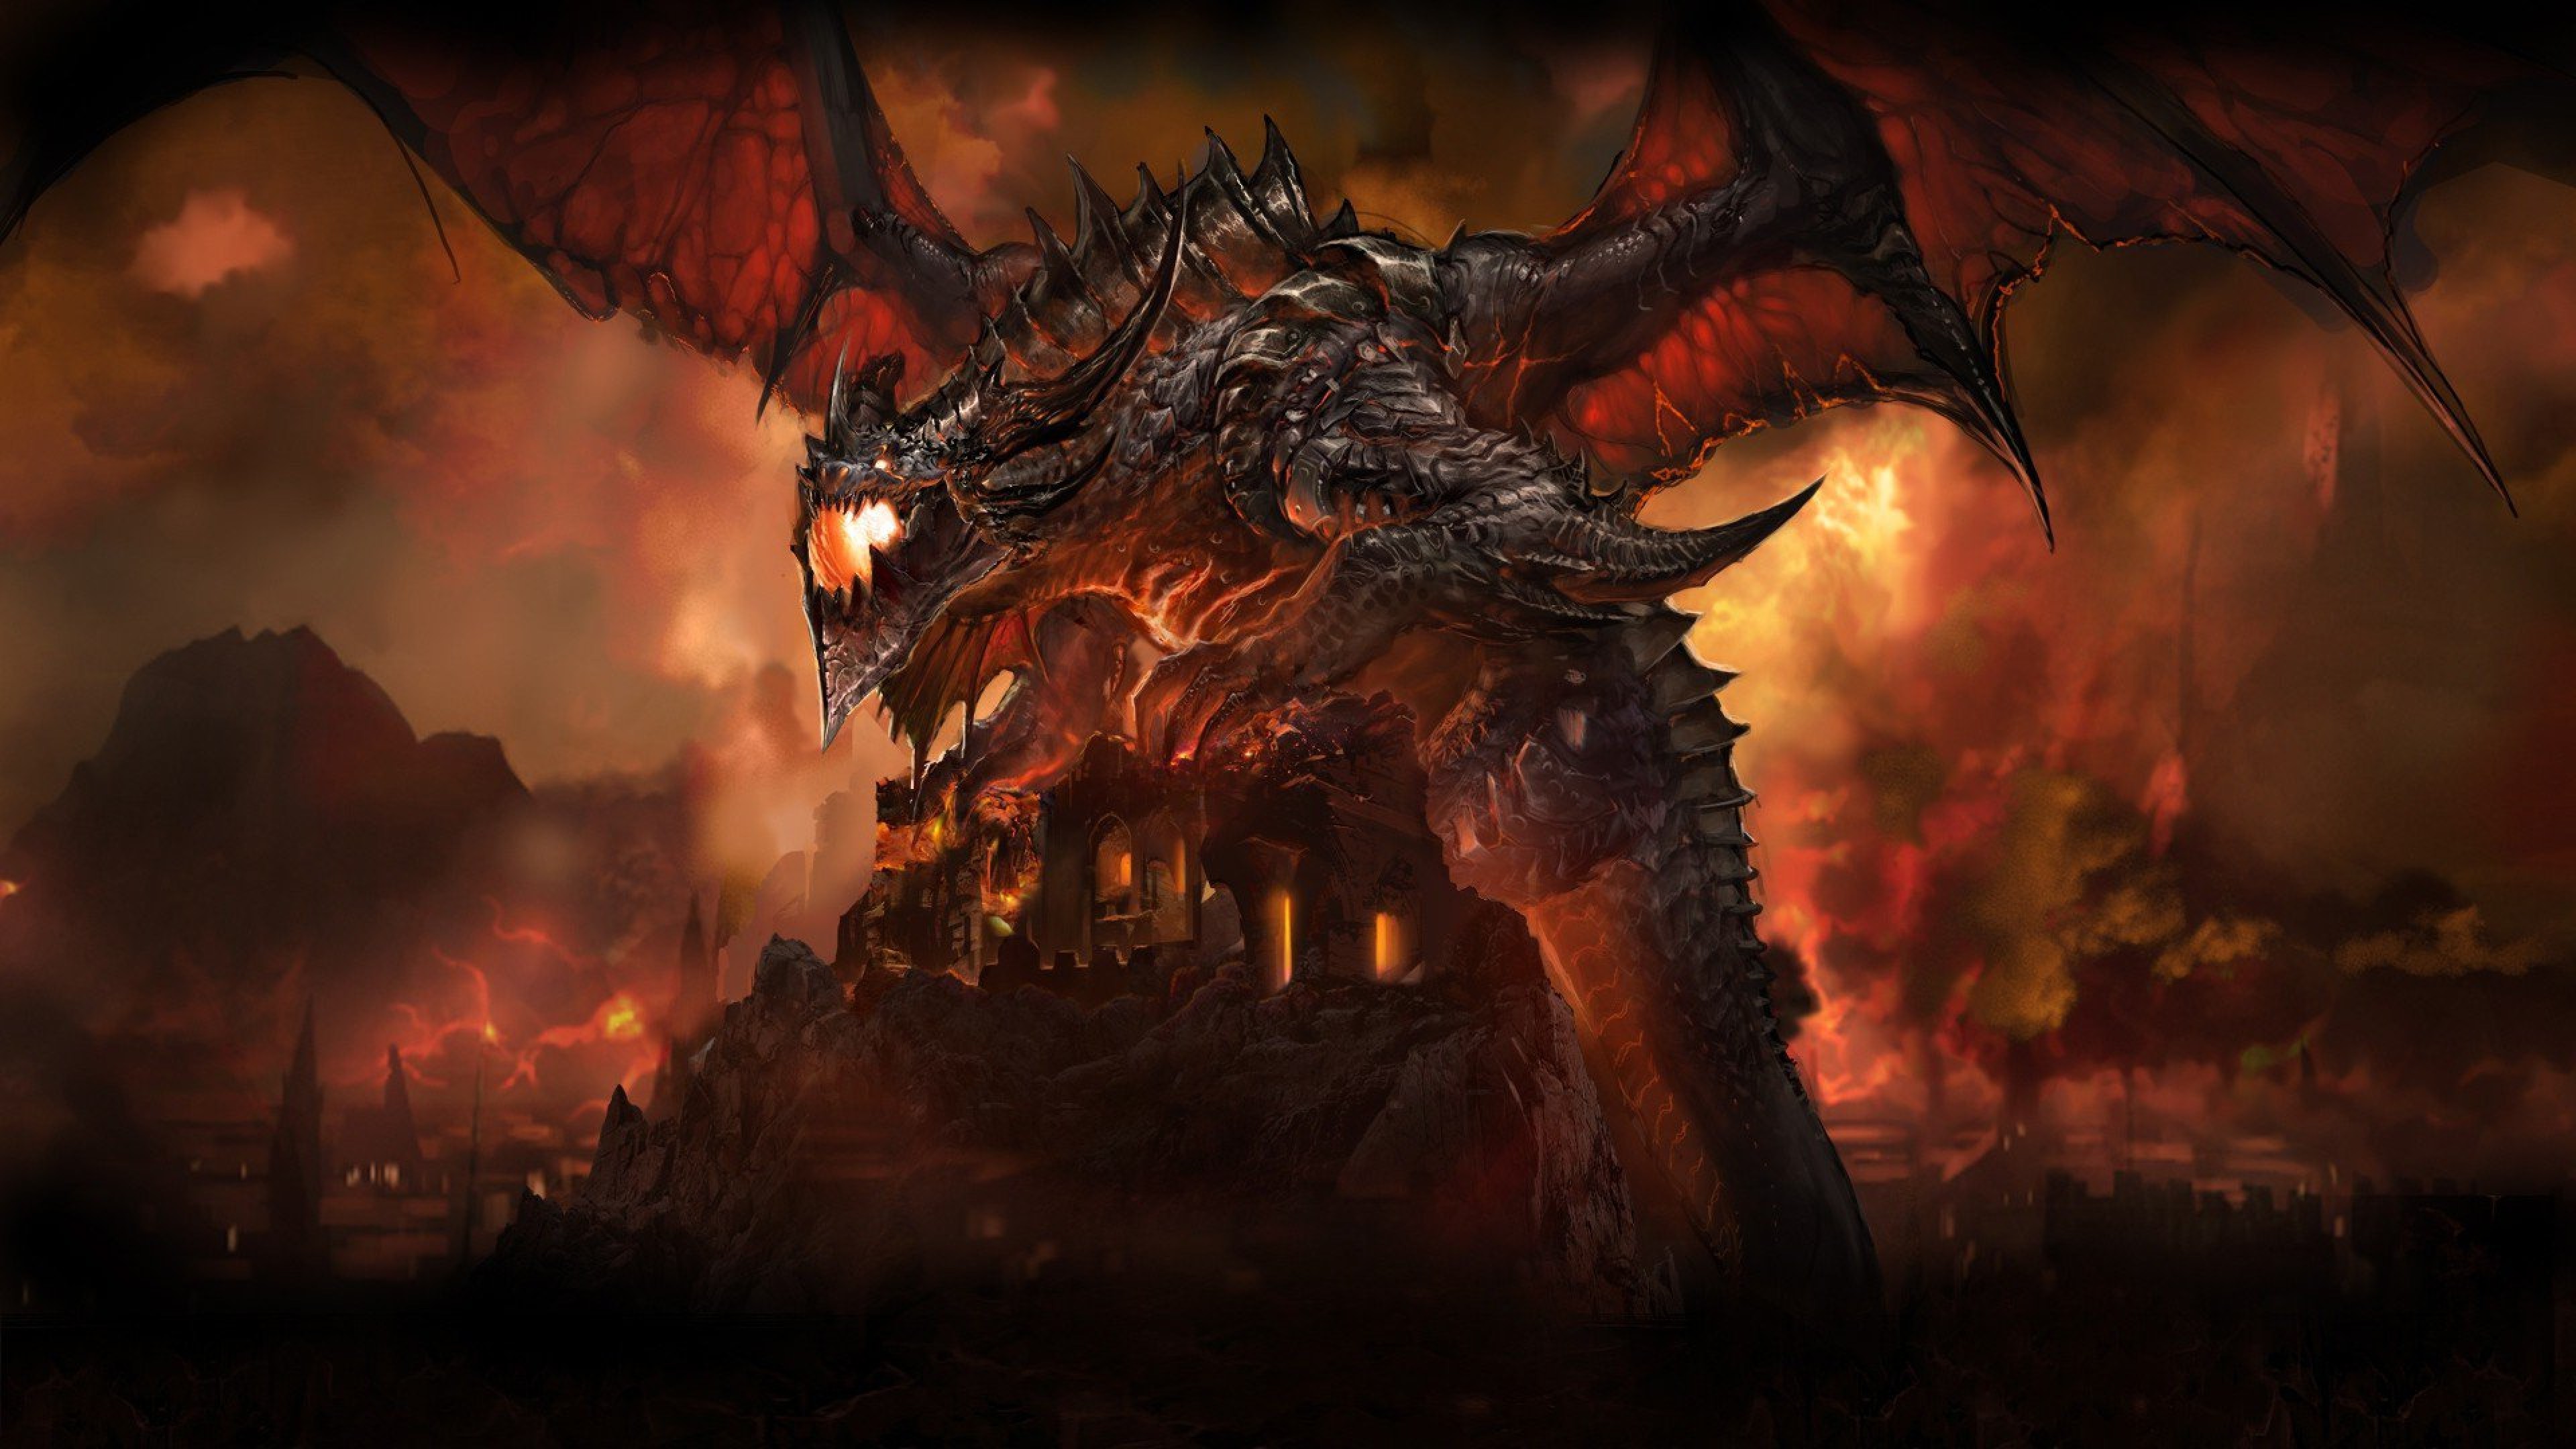 4k dragon wallpaper,demonio,continuar,juego de acción y aventura,cg artwork,personaje de ficción